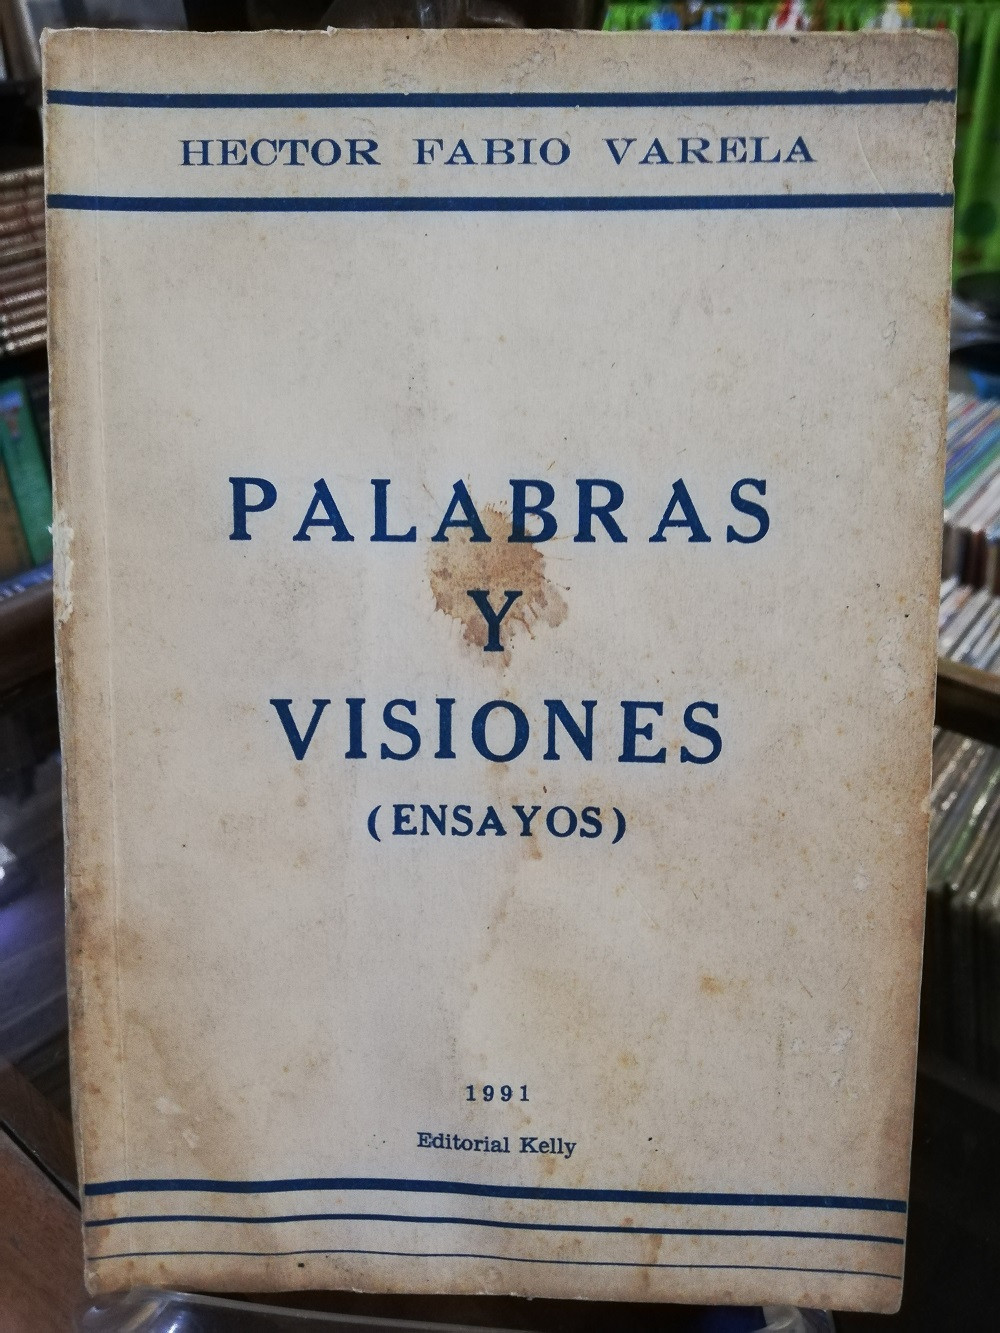 Imagen PALABRAS Y VISIONES (ENSAYOS) - HECTOR FABIO VARELA 1